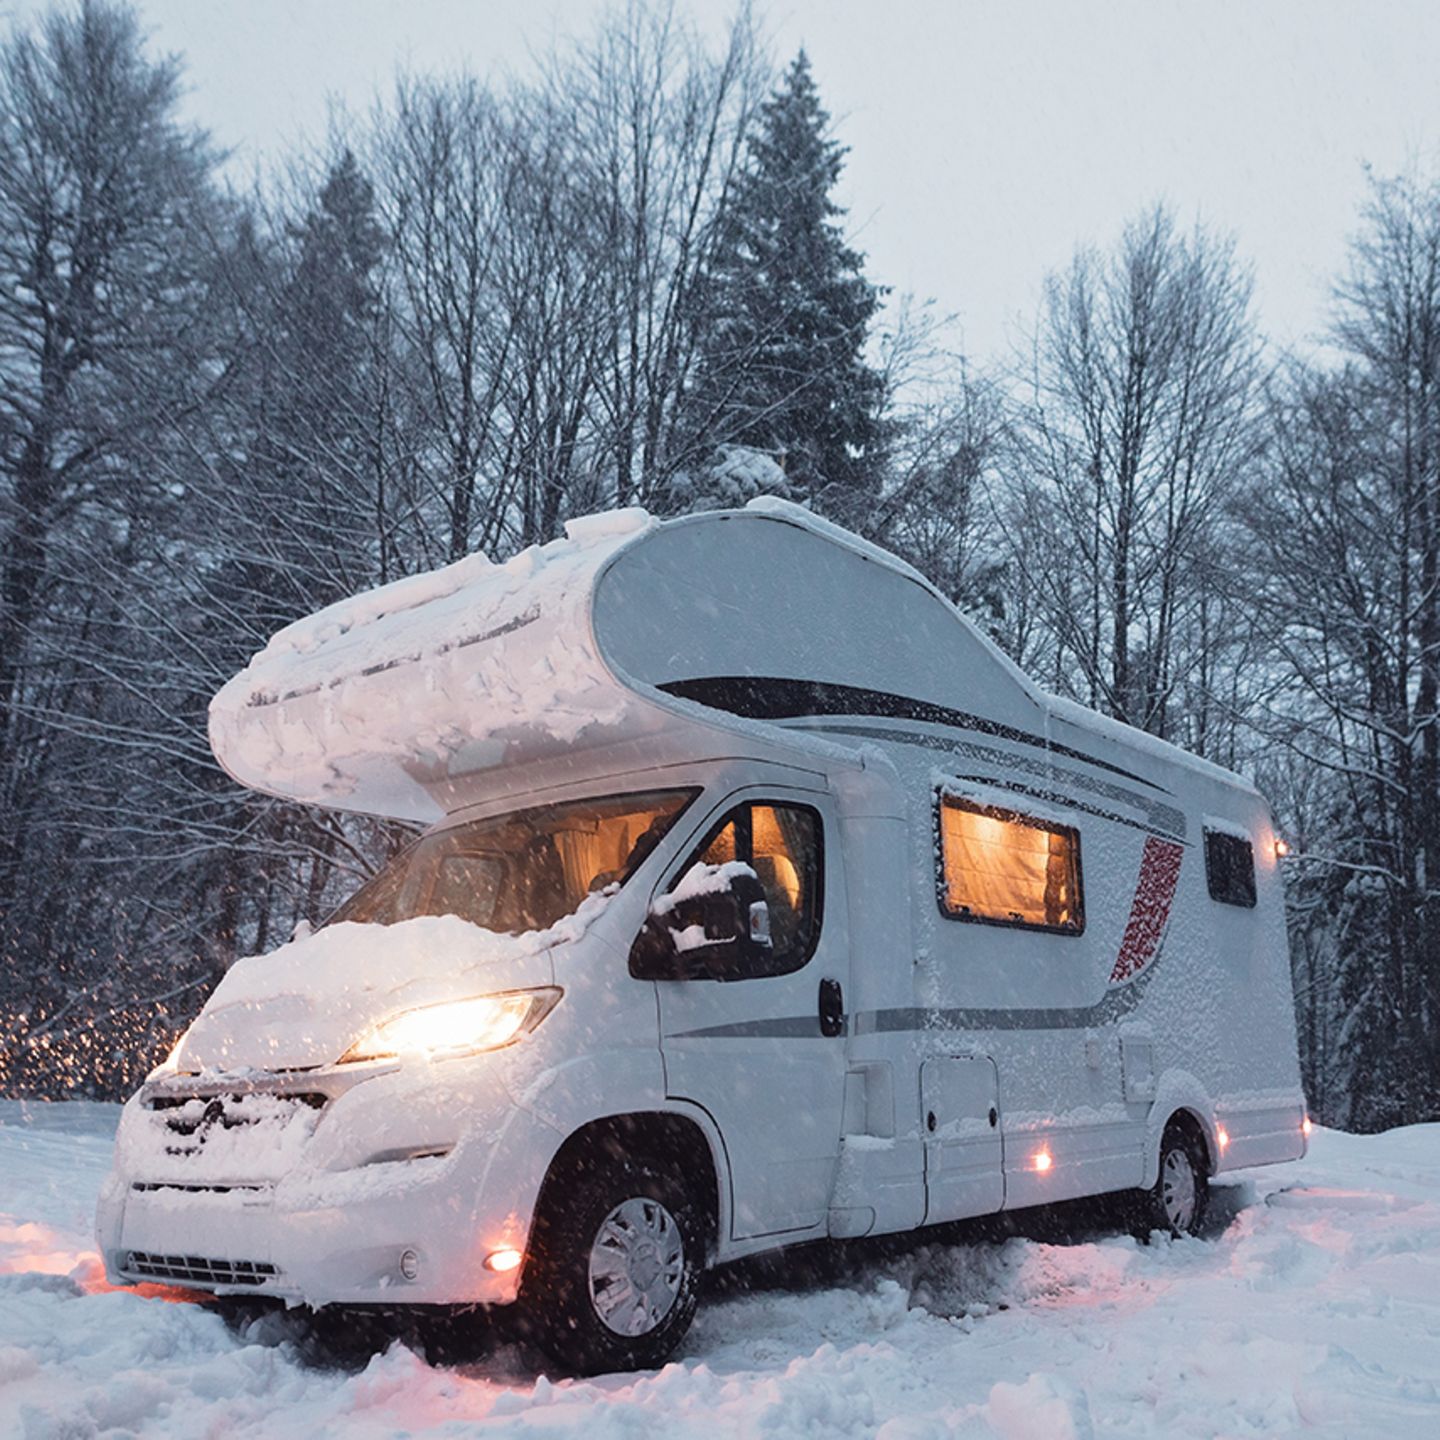 Reiseplanung: Diese fünf Fehler sollten Sie als Winter-Camper vermeiden -  [GEO]